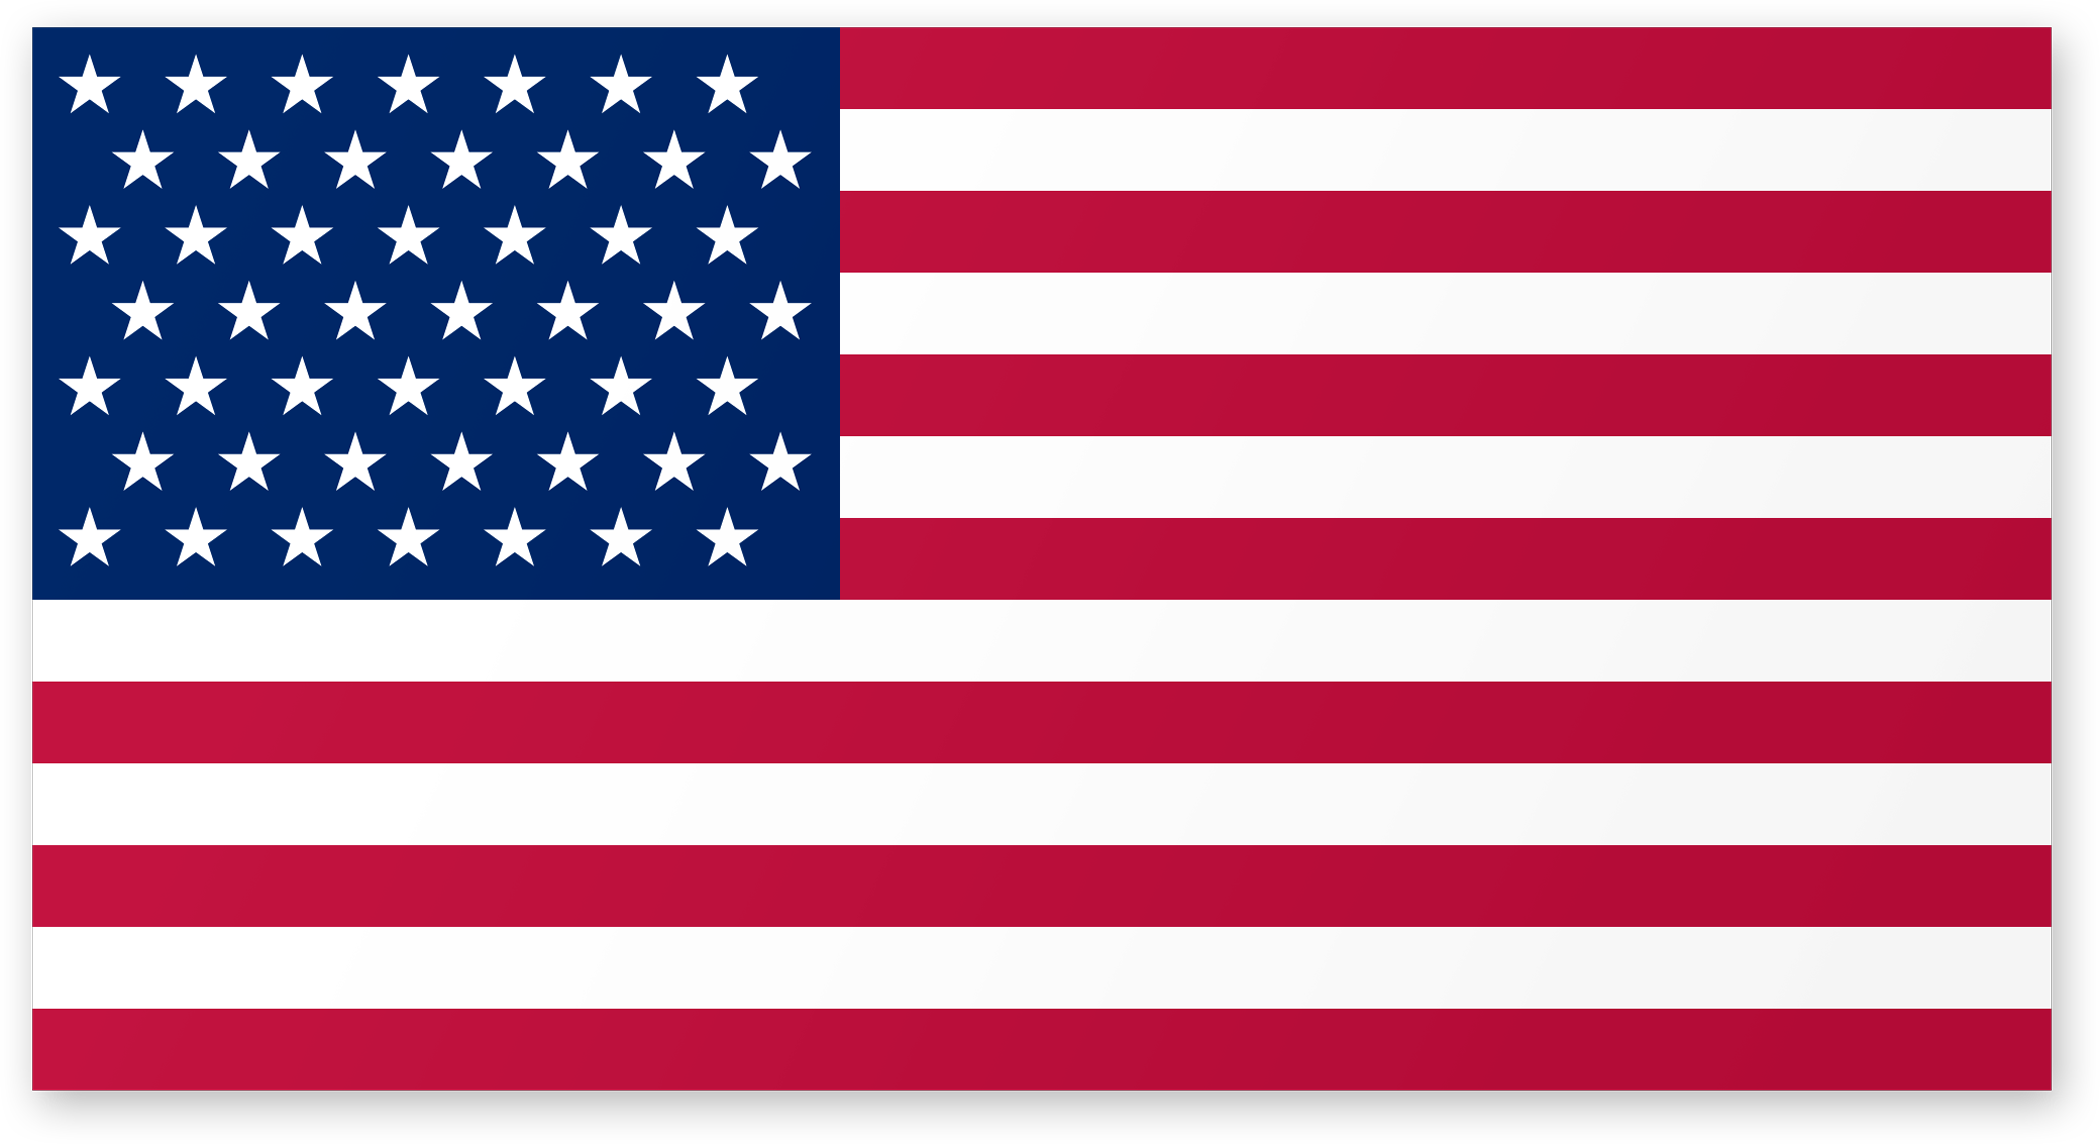 American Flag Png Transparent Hdpng.com 2100 - American Flag Transparent, Transparent background PNG HD thumbnail